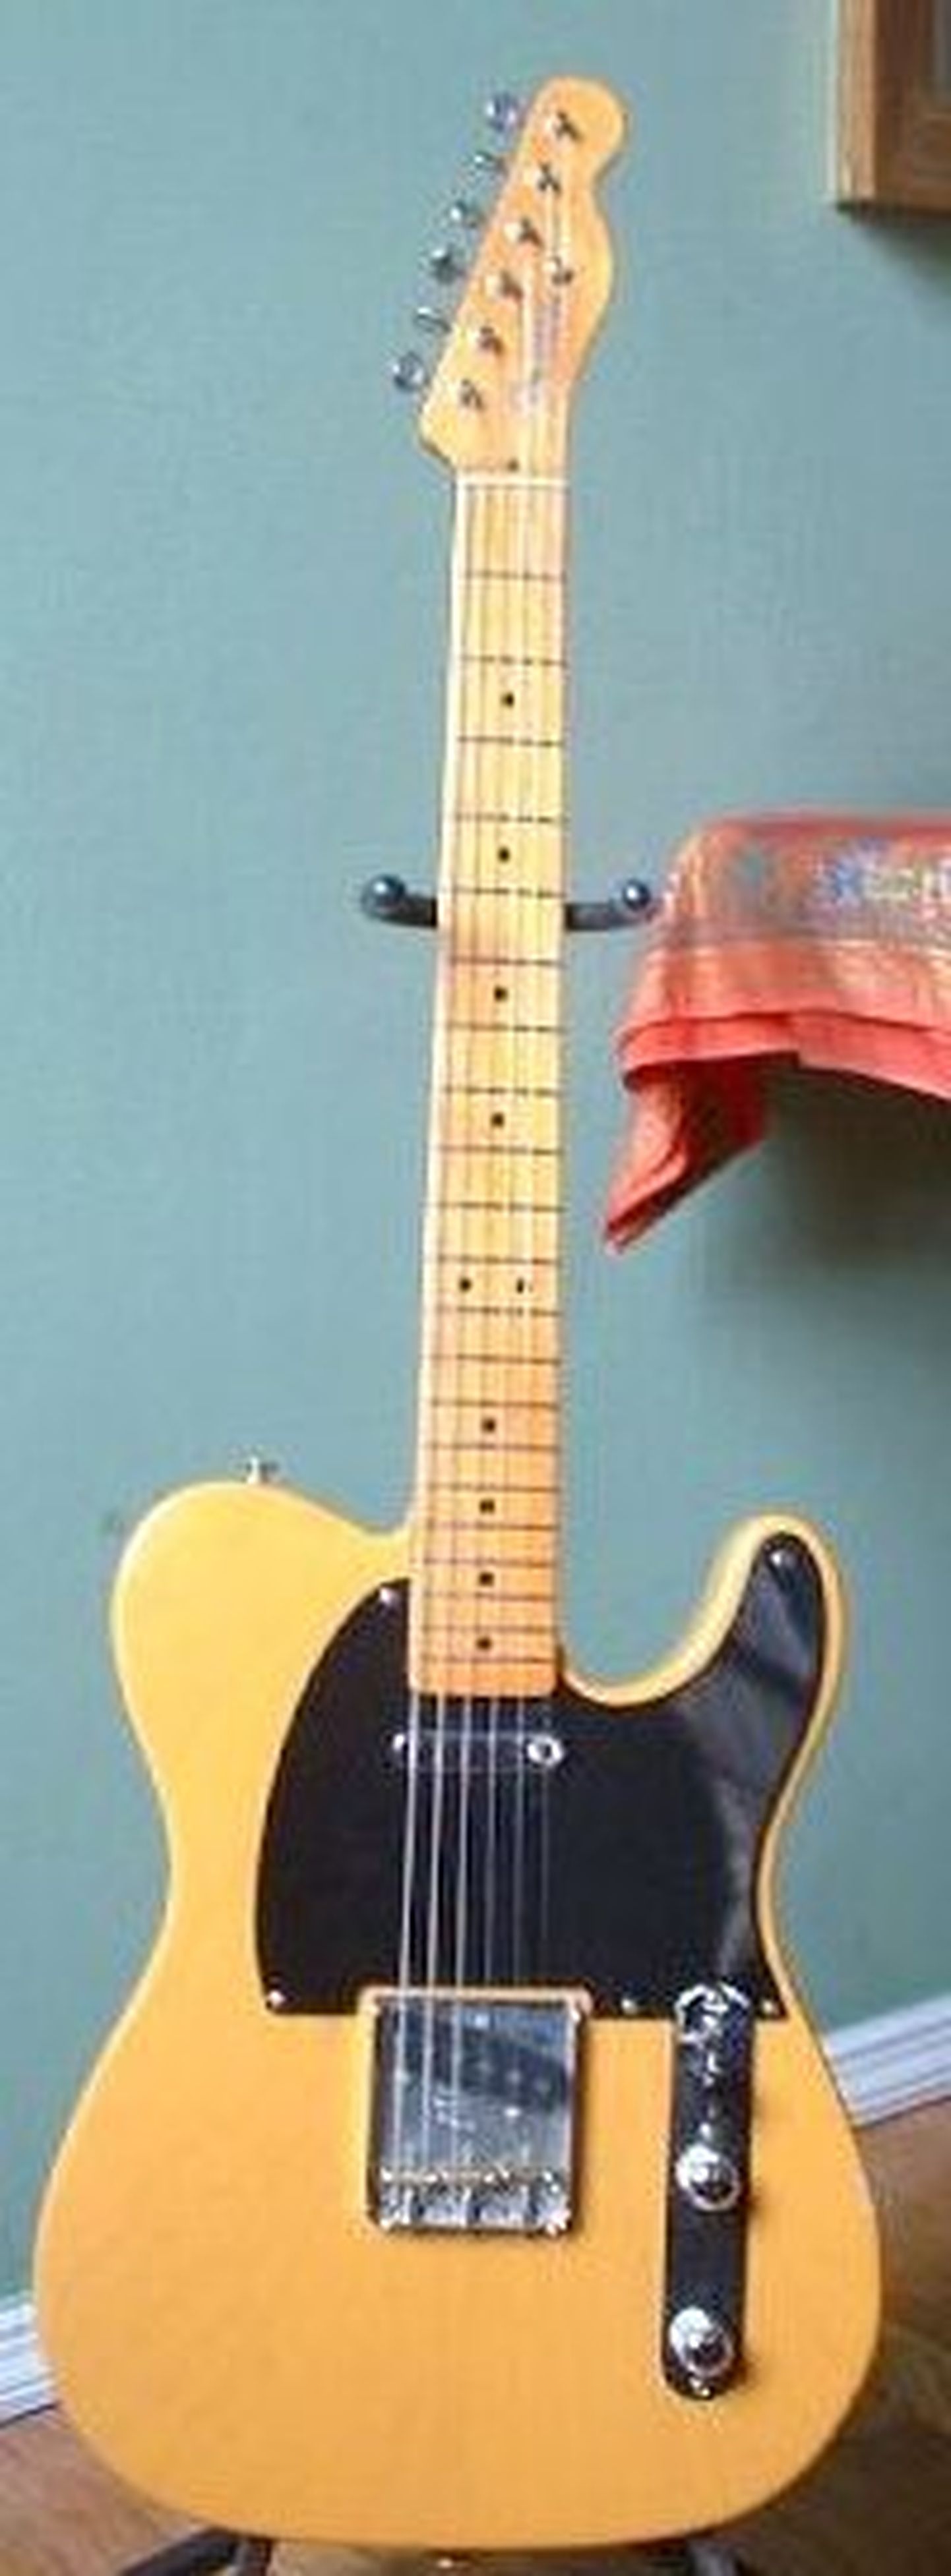 Fender Telecaster kitarr